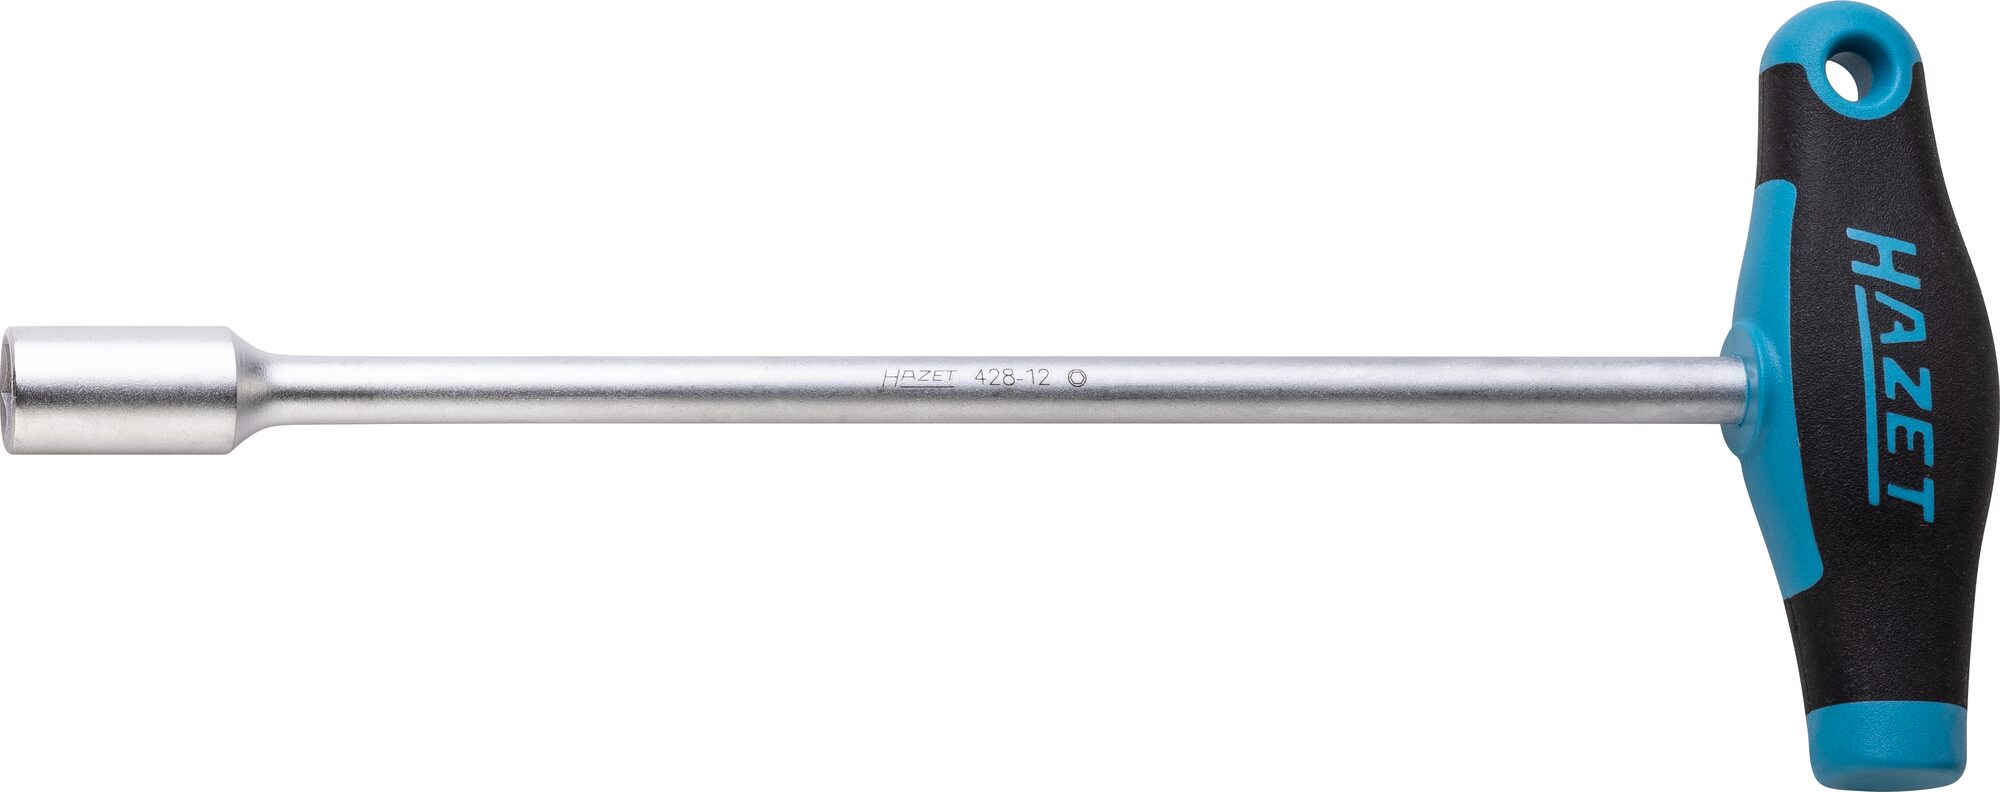 HAZET Steckschlüssel · mit T-Griff 428-12 · Außen Sechskant Profil · 12 mm